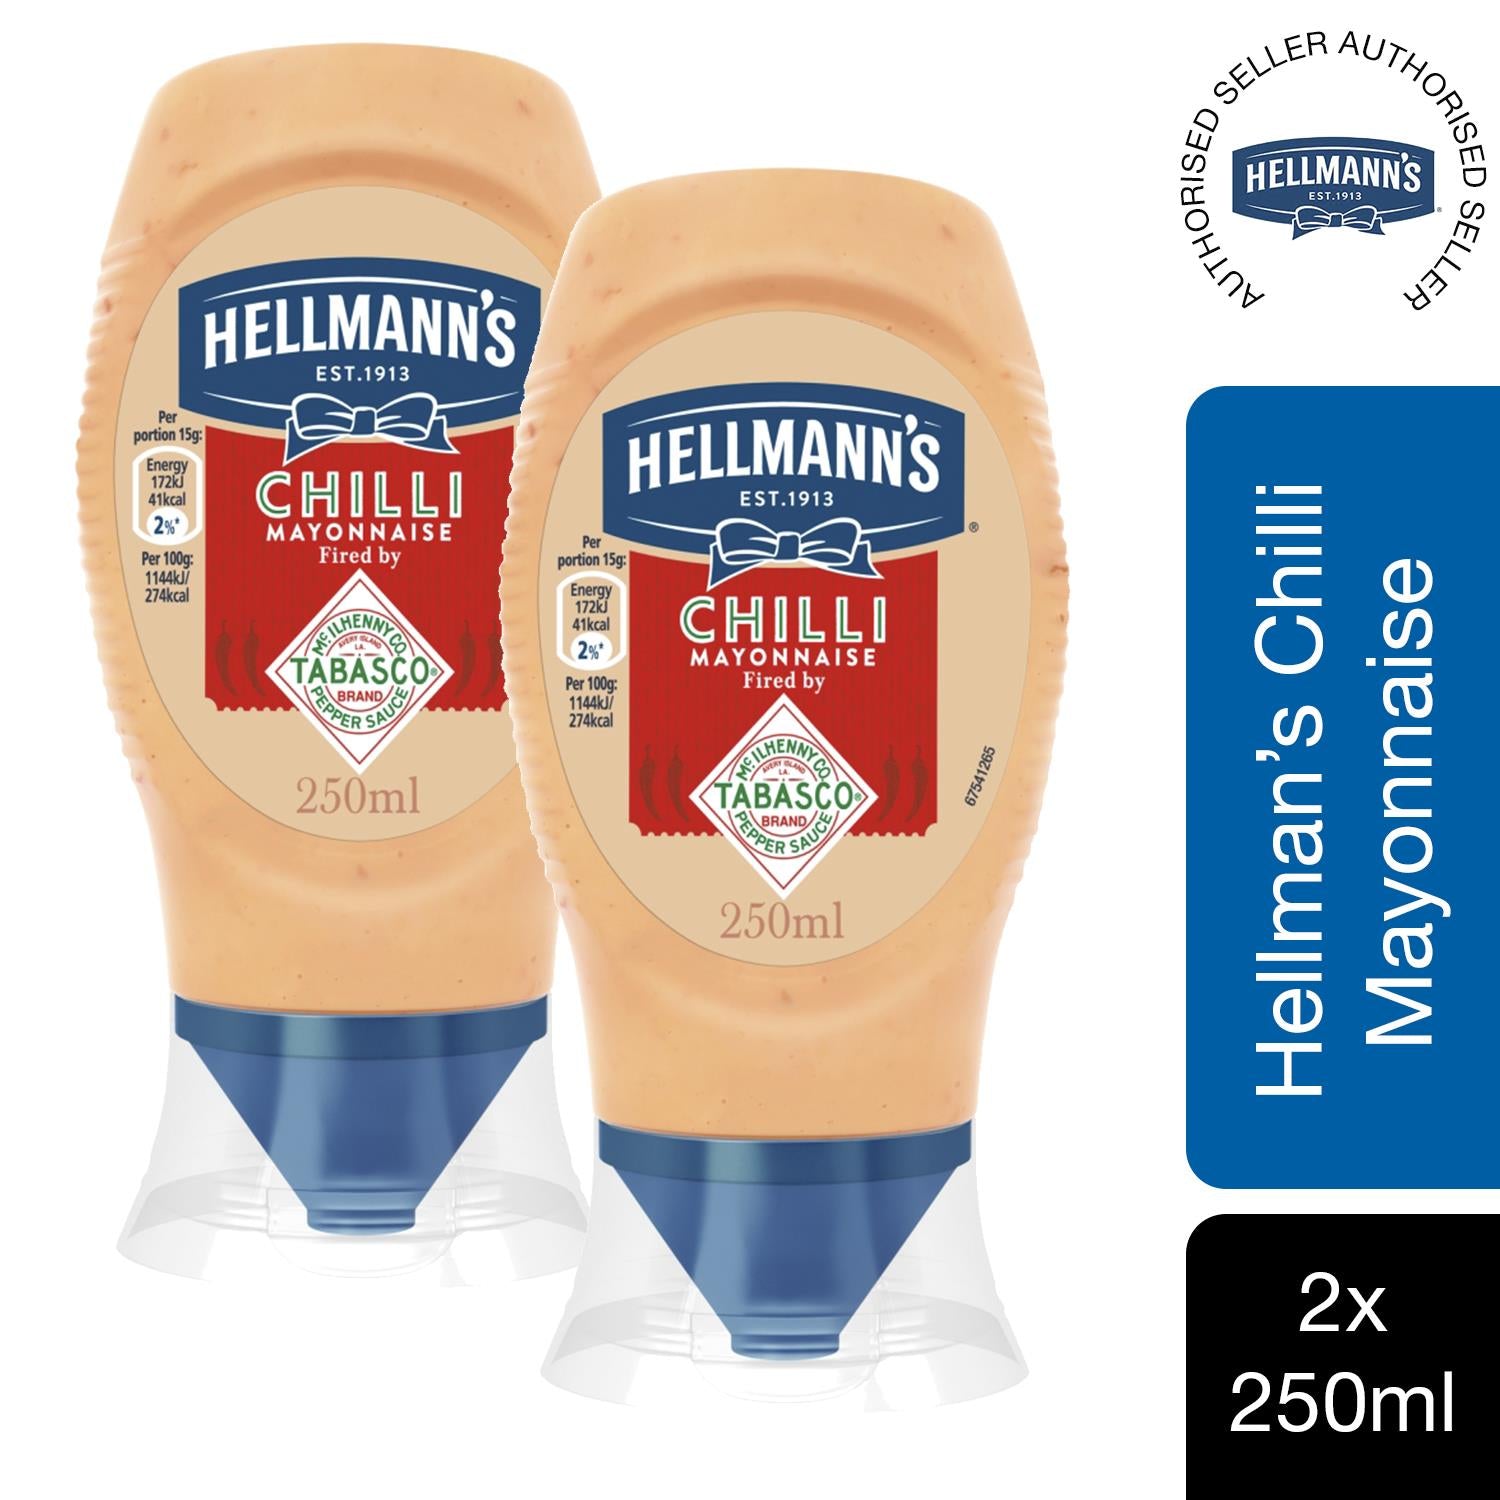 Hellmann's Tabasco ChilliMayonnaise & ChunkyBurger Sauce 1or 2 of Each –  Avant Garde Brands